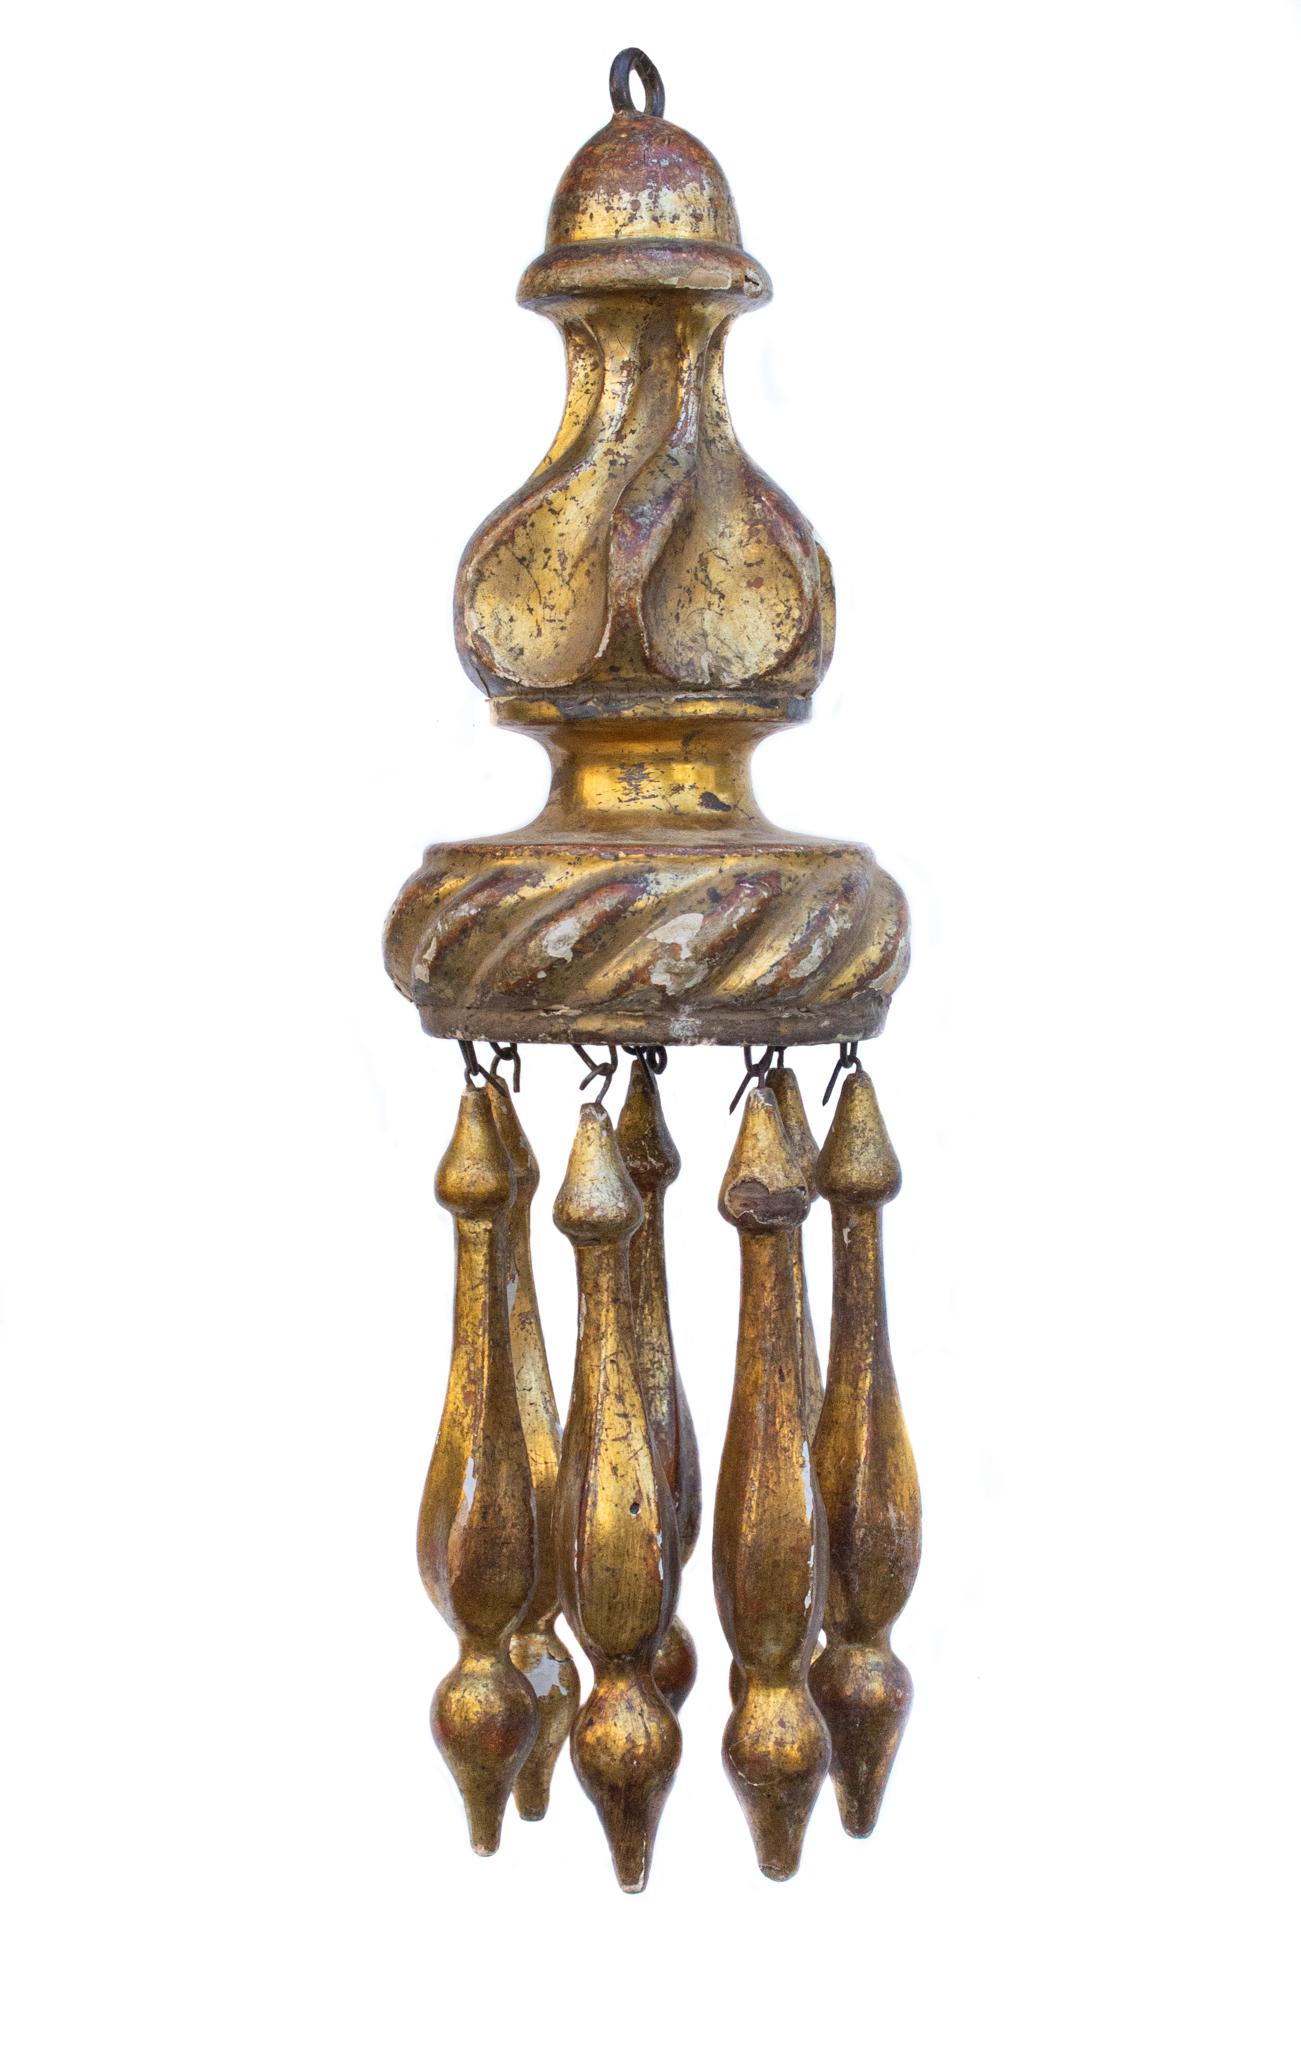 Paire de pompons italiens du 18e siècle sculptés à la main à la feuille d'or. Le pompon est originaire d'une église italienne de Toscane et était utilisé pour décorer les luminaires ecclésiastiques et d'autres objets de culte. Cette pièce est très